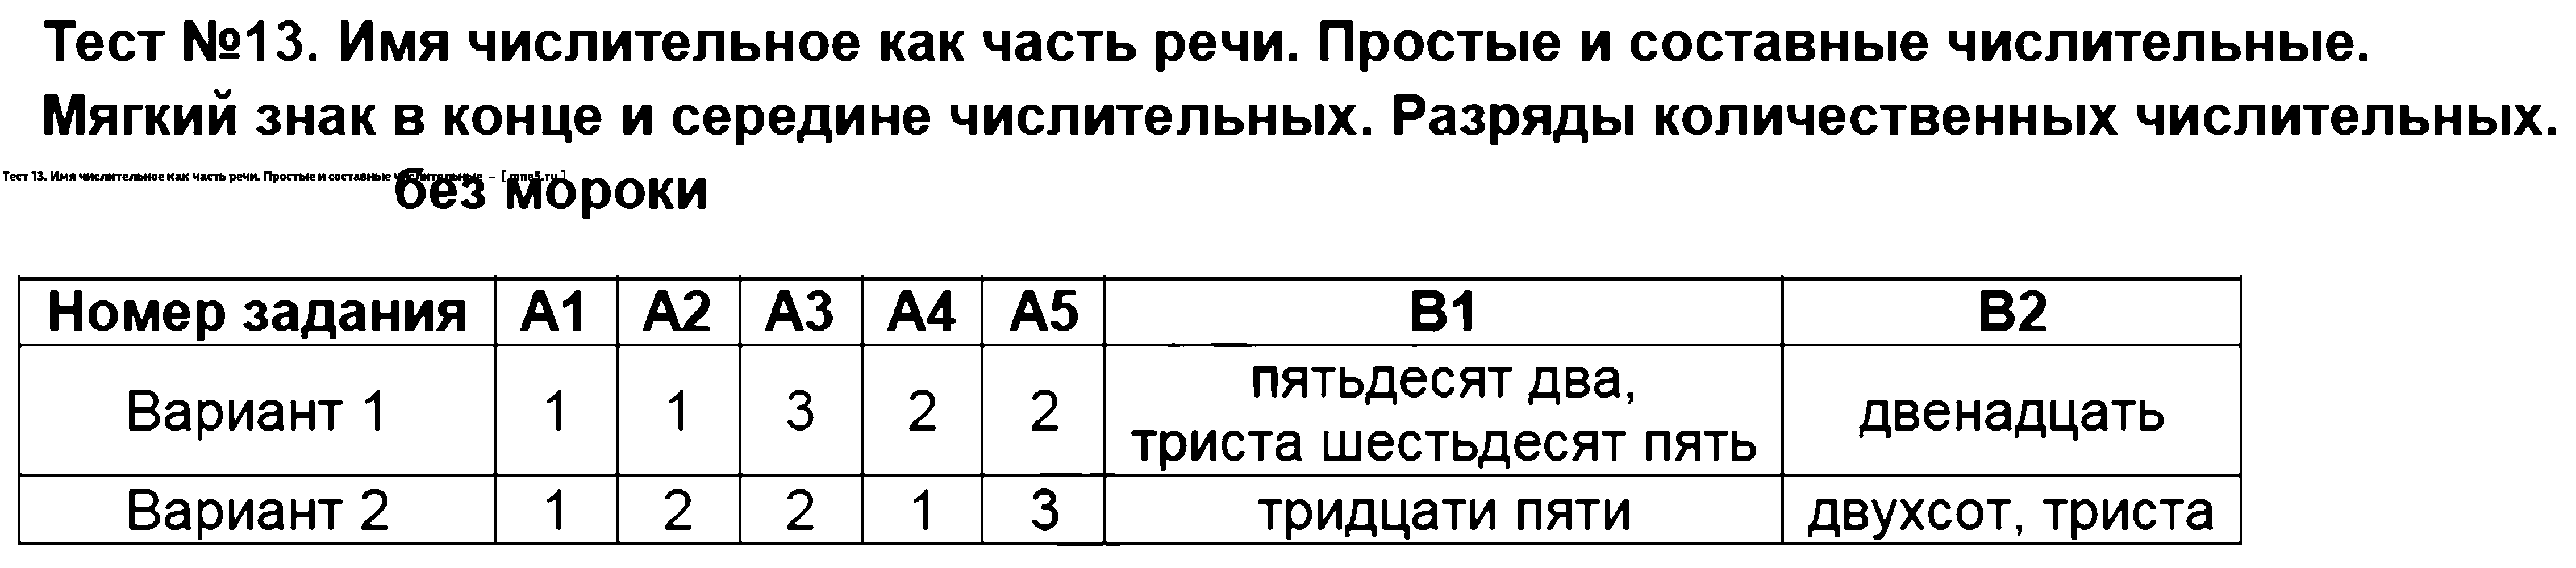 ГДЗ Русский язык 6 класс - Тест 13. Имя числительное как часть речи. Простые и составные числительные